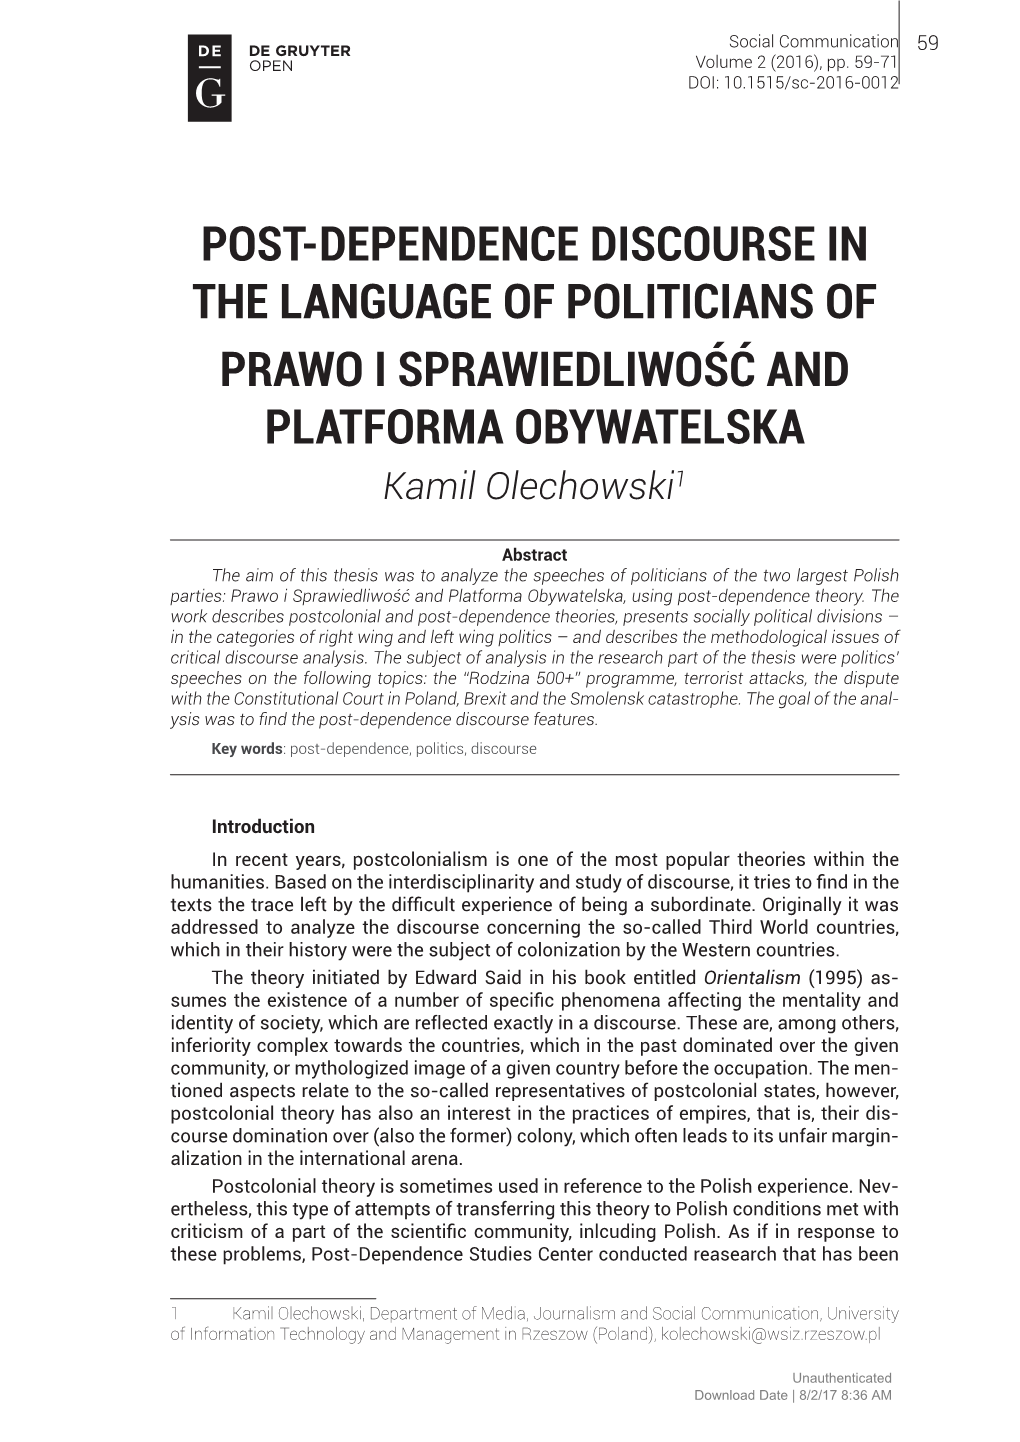 Post-Dependence Discourse in the Language of Politicians of Prawo I Sprawiedliwość and Platforma Obywatelska Kamil Olechowski1